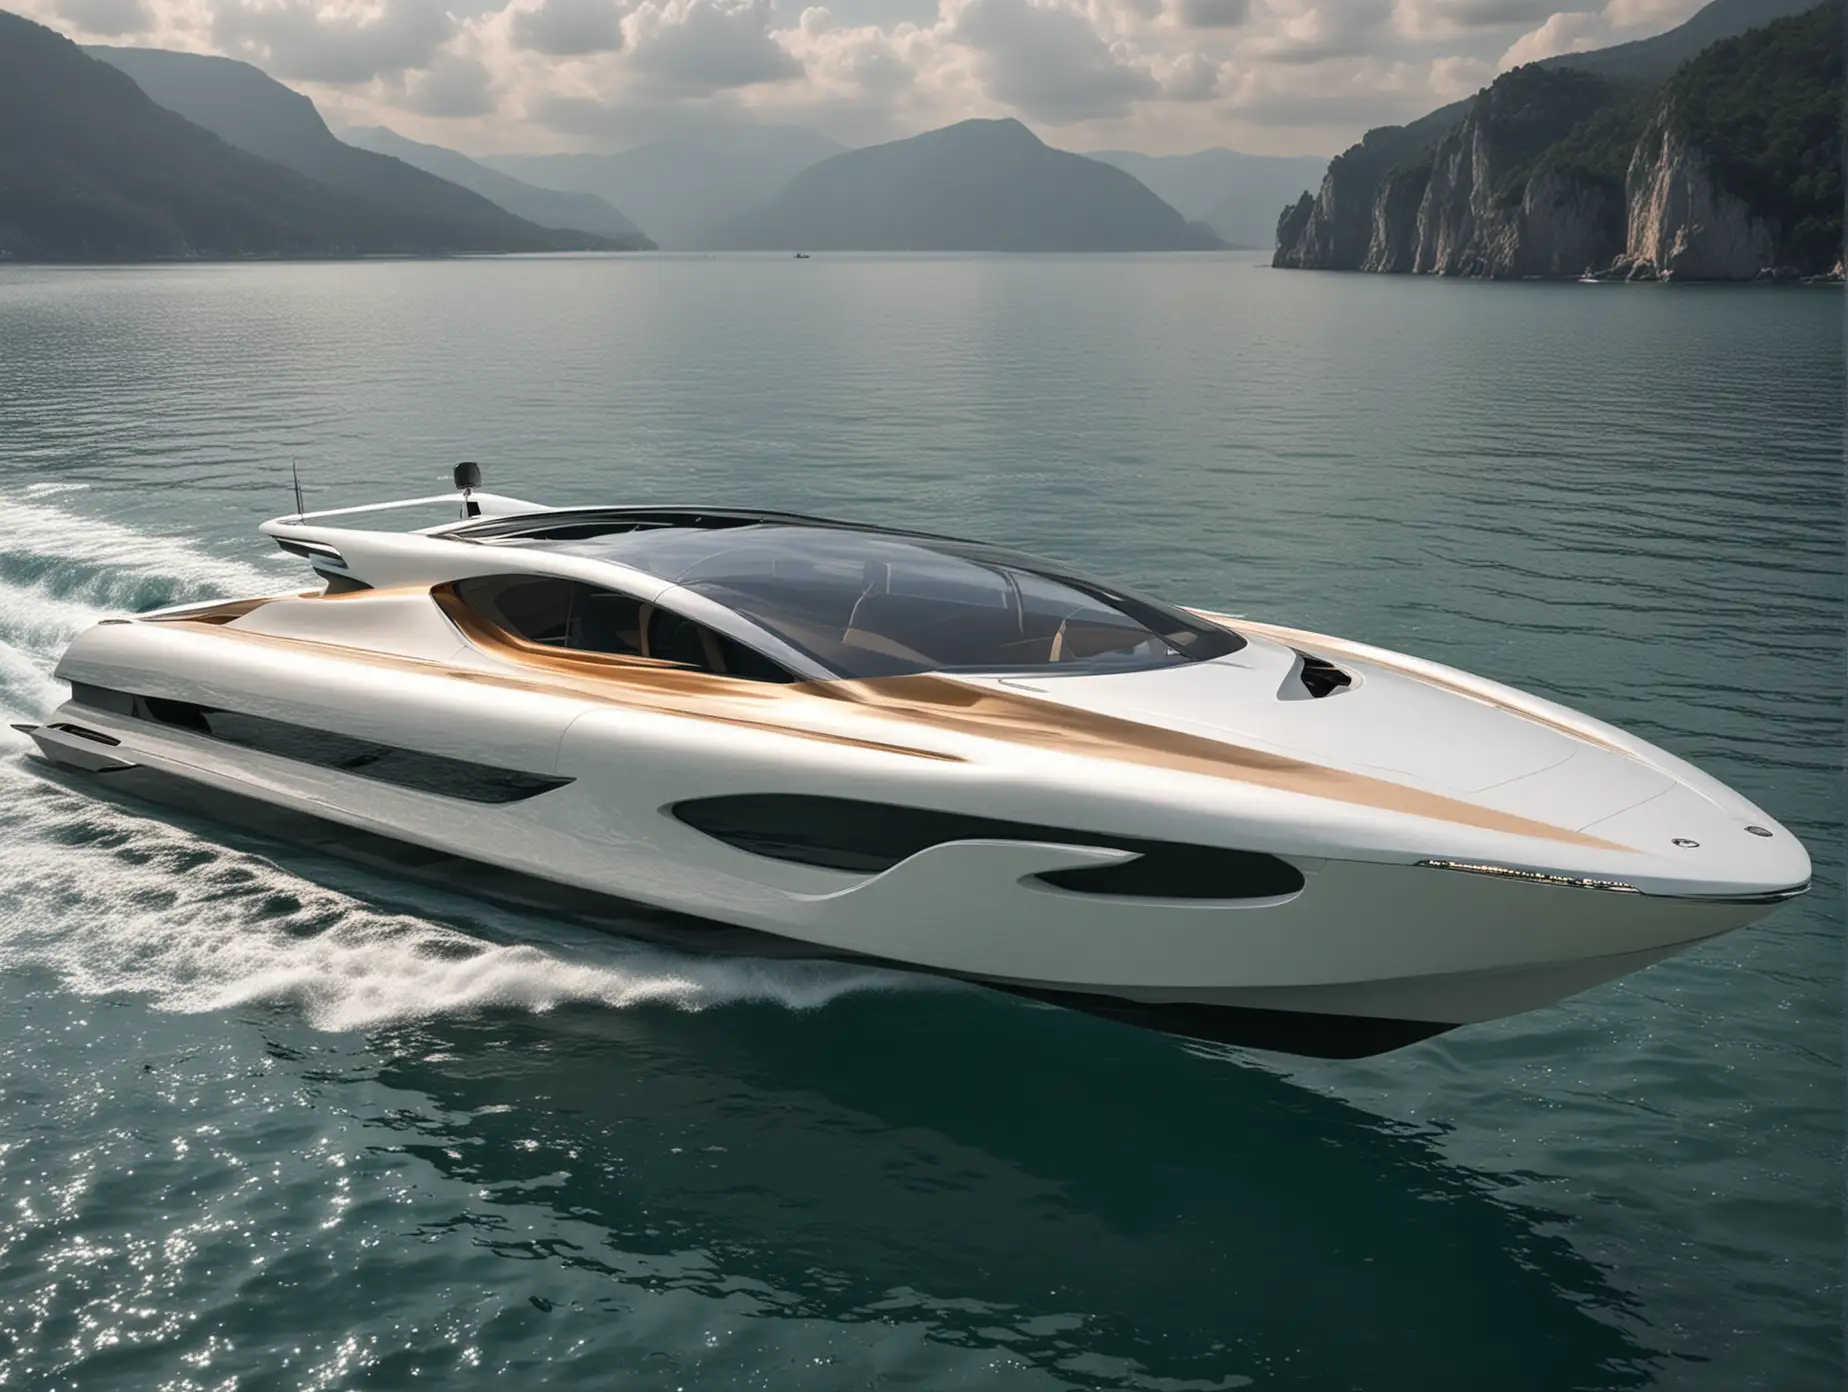 Futuristic Luxury Electric Boat Concept Inspired by Luigi Colani Design